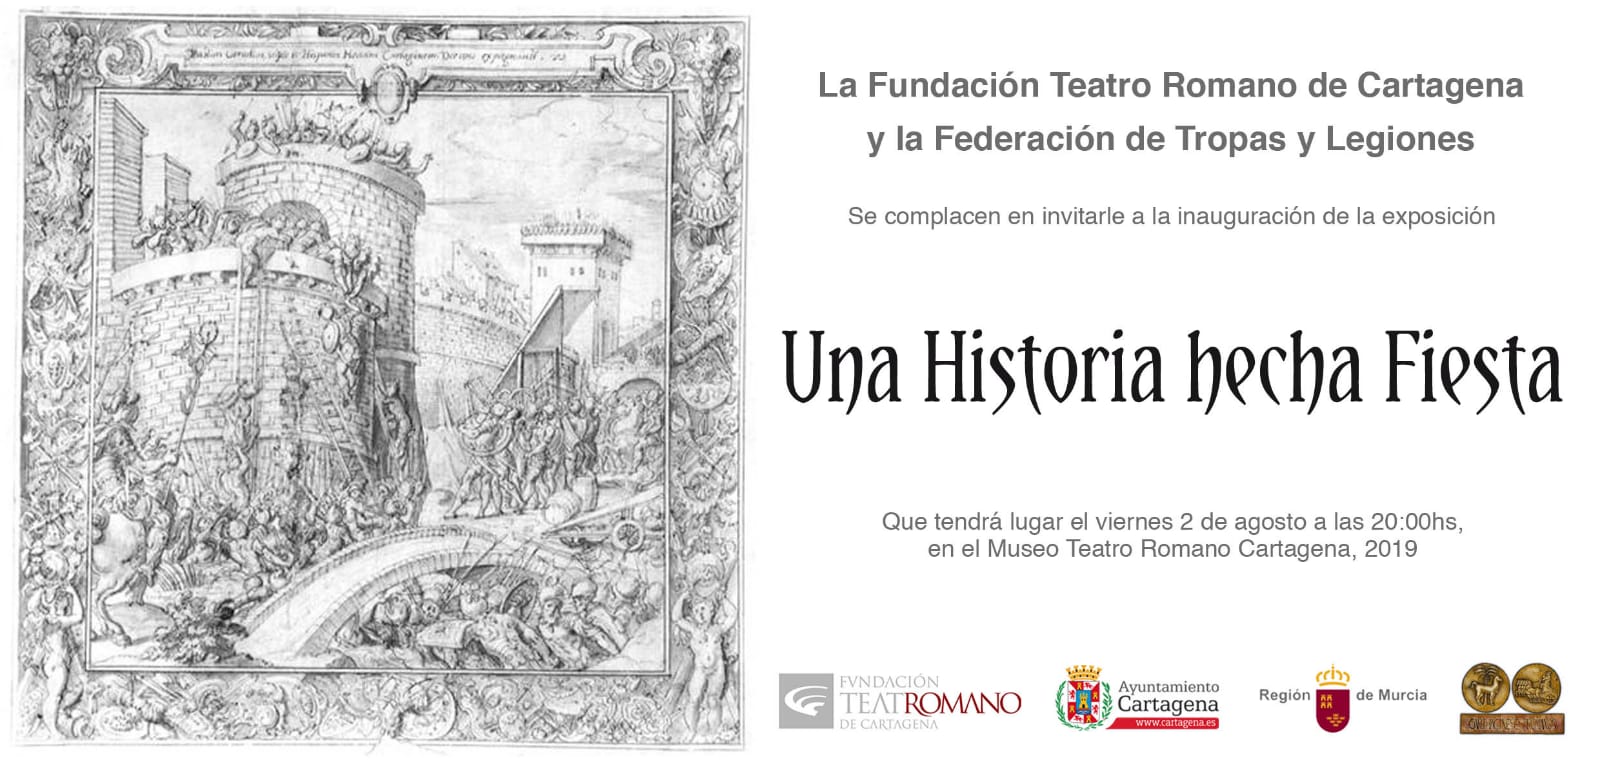 "UNA HISTORIA HECHA FIESTA" - Exposición temporal sobre Carthagineses y Romanos en el Museo del Teatro Romano